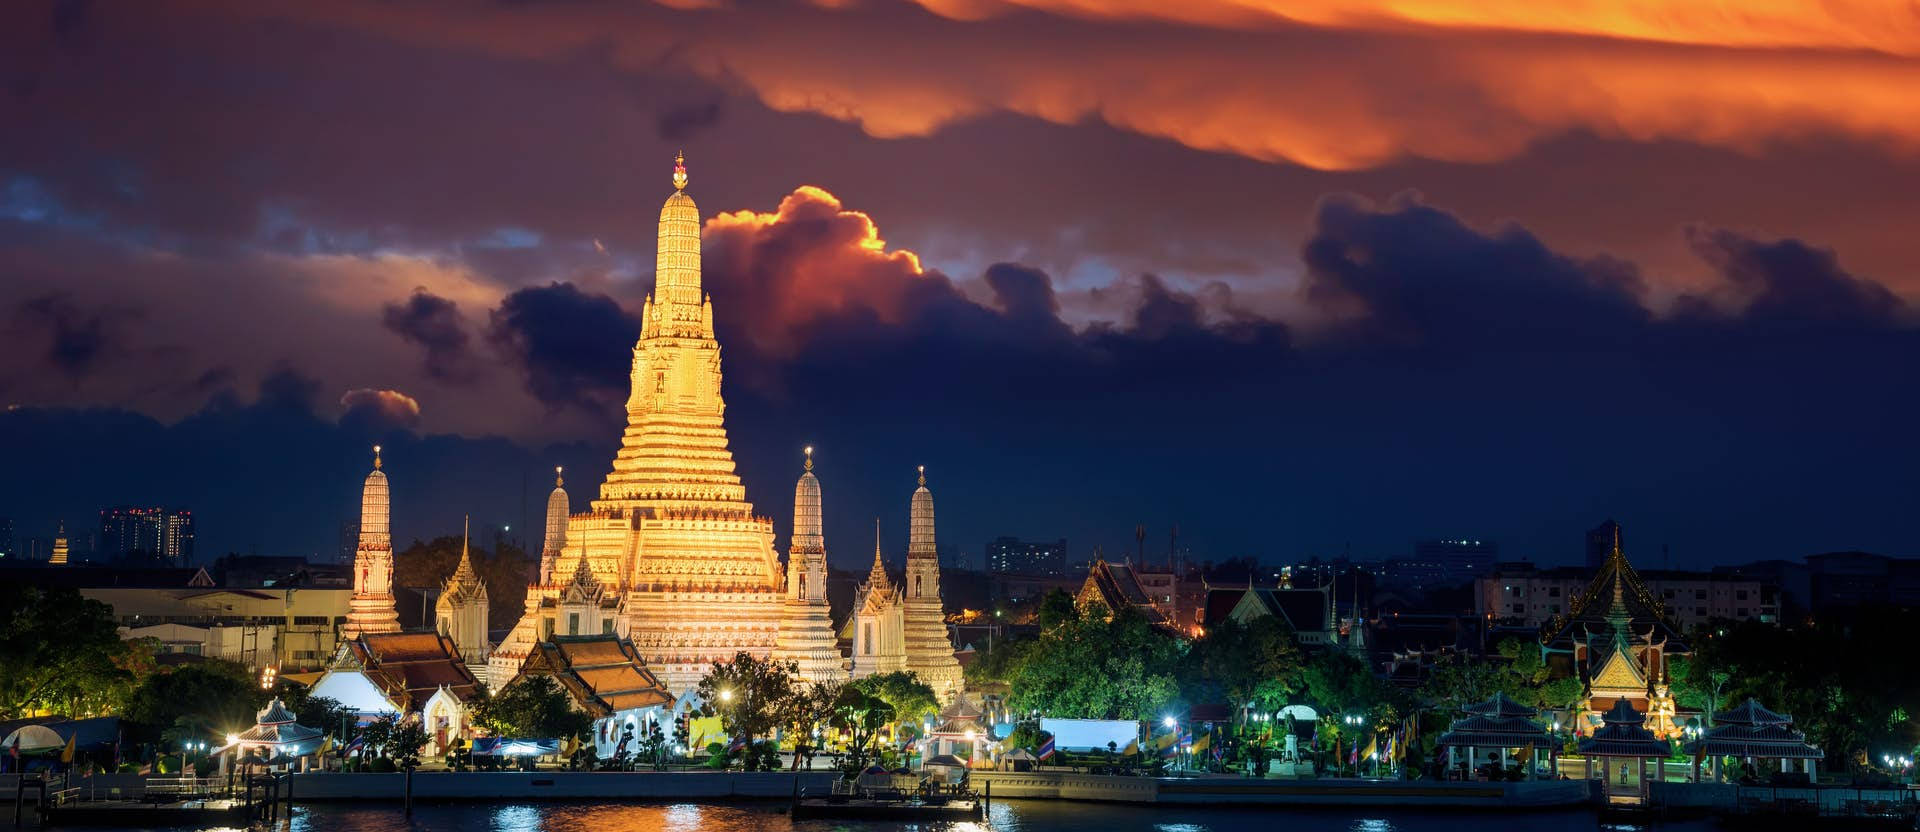 Bangkok Wat Arun In Sunset Background